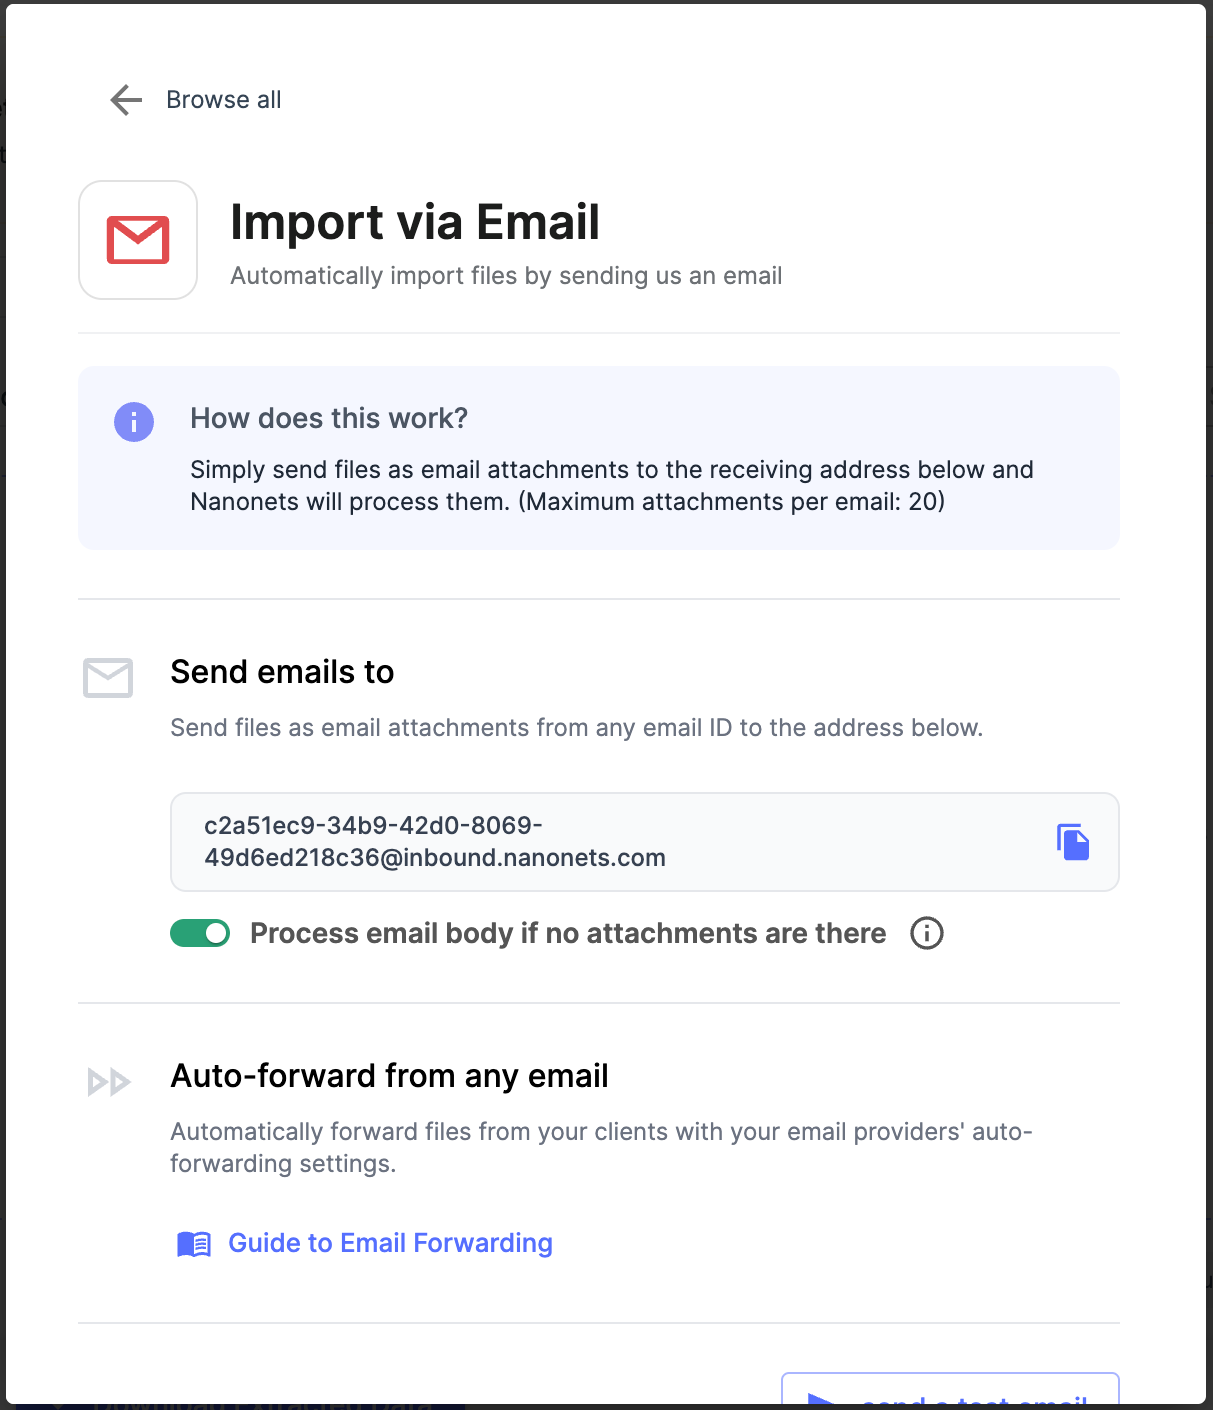 E-mailek importálása